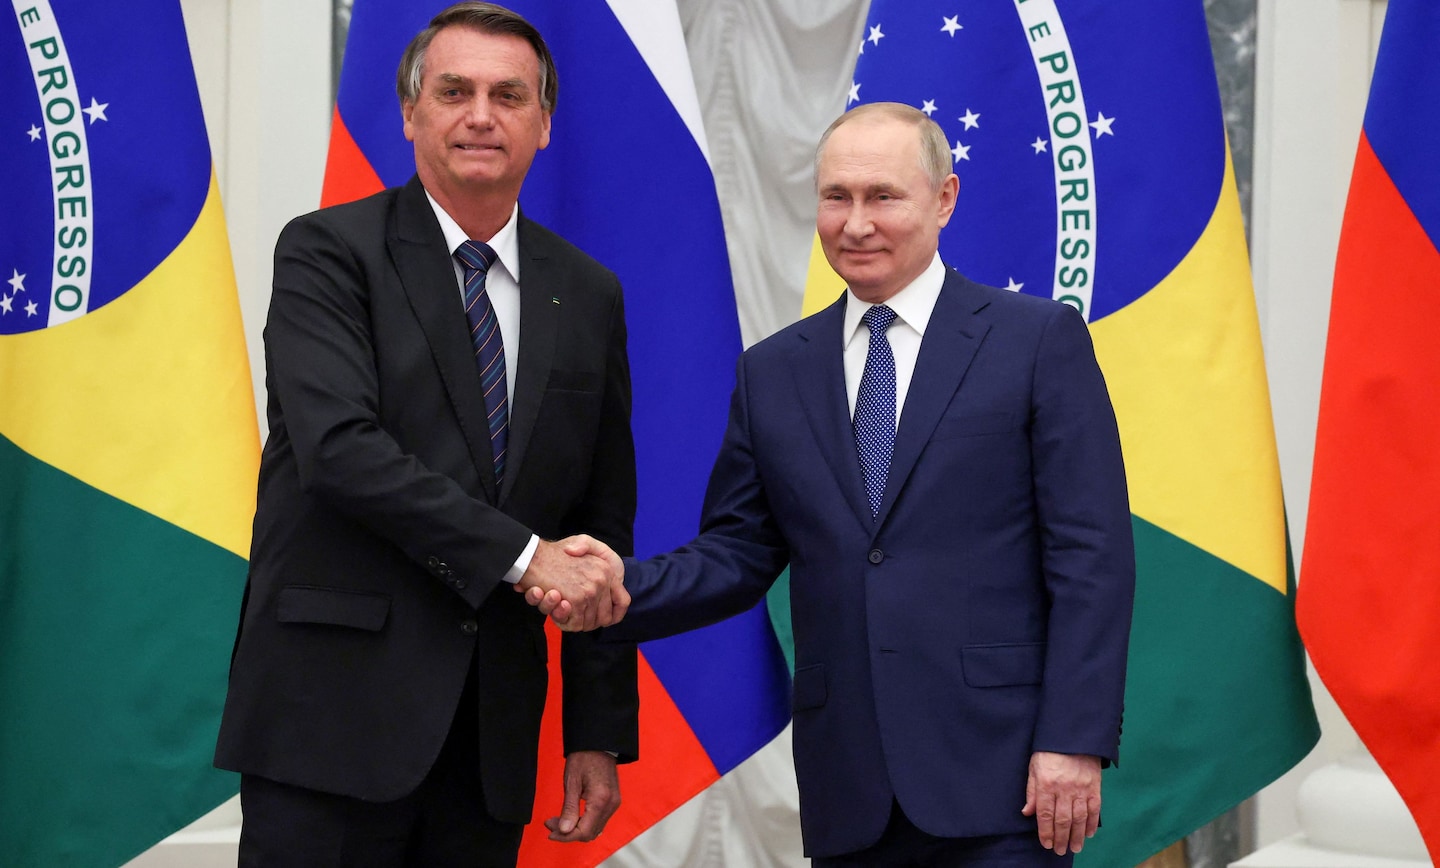 Il brasiliano Bolsonaro incontra il russo Putin a Mosca nel mezzo della crisi ucraina